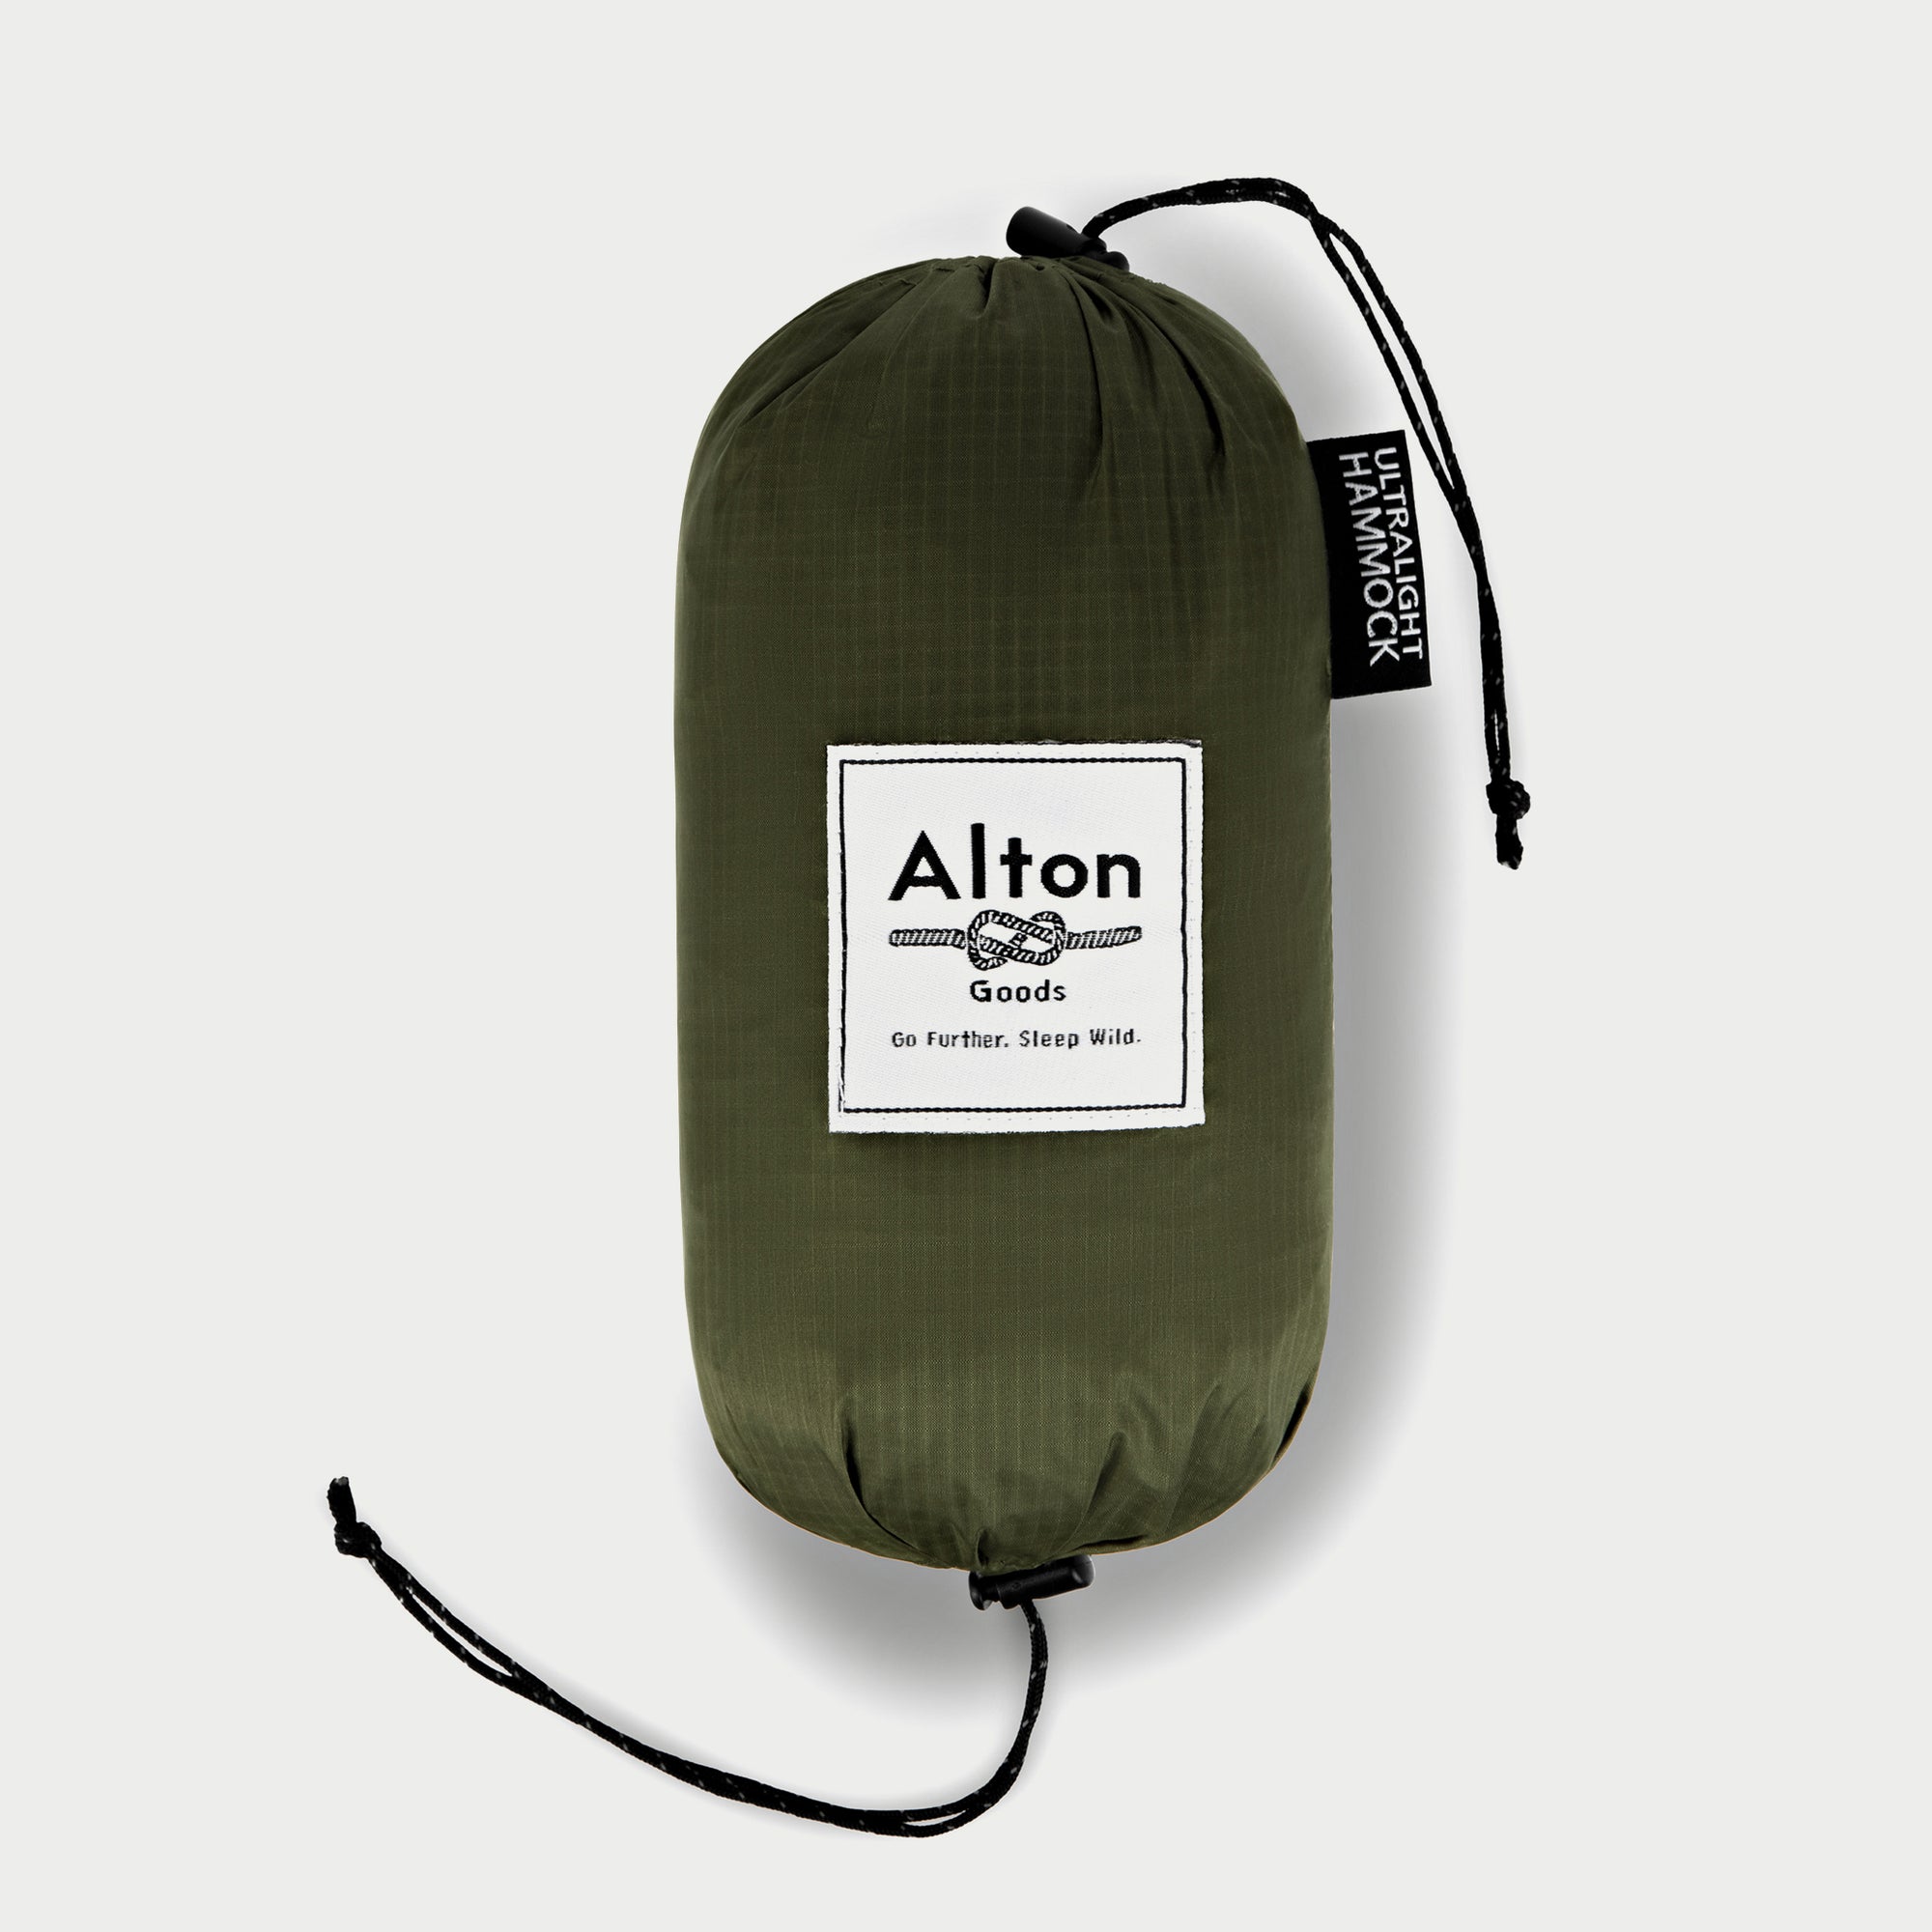 Alton Goods Ultralight Hammock Bag